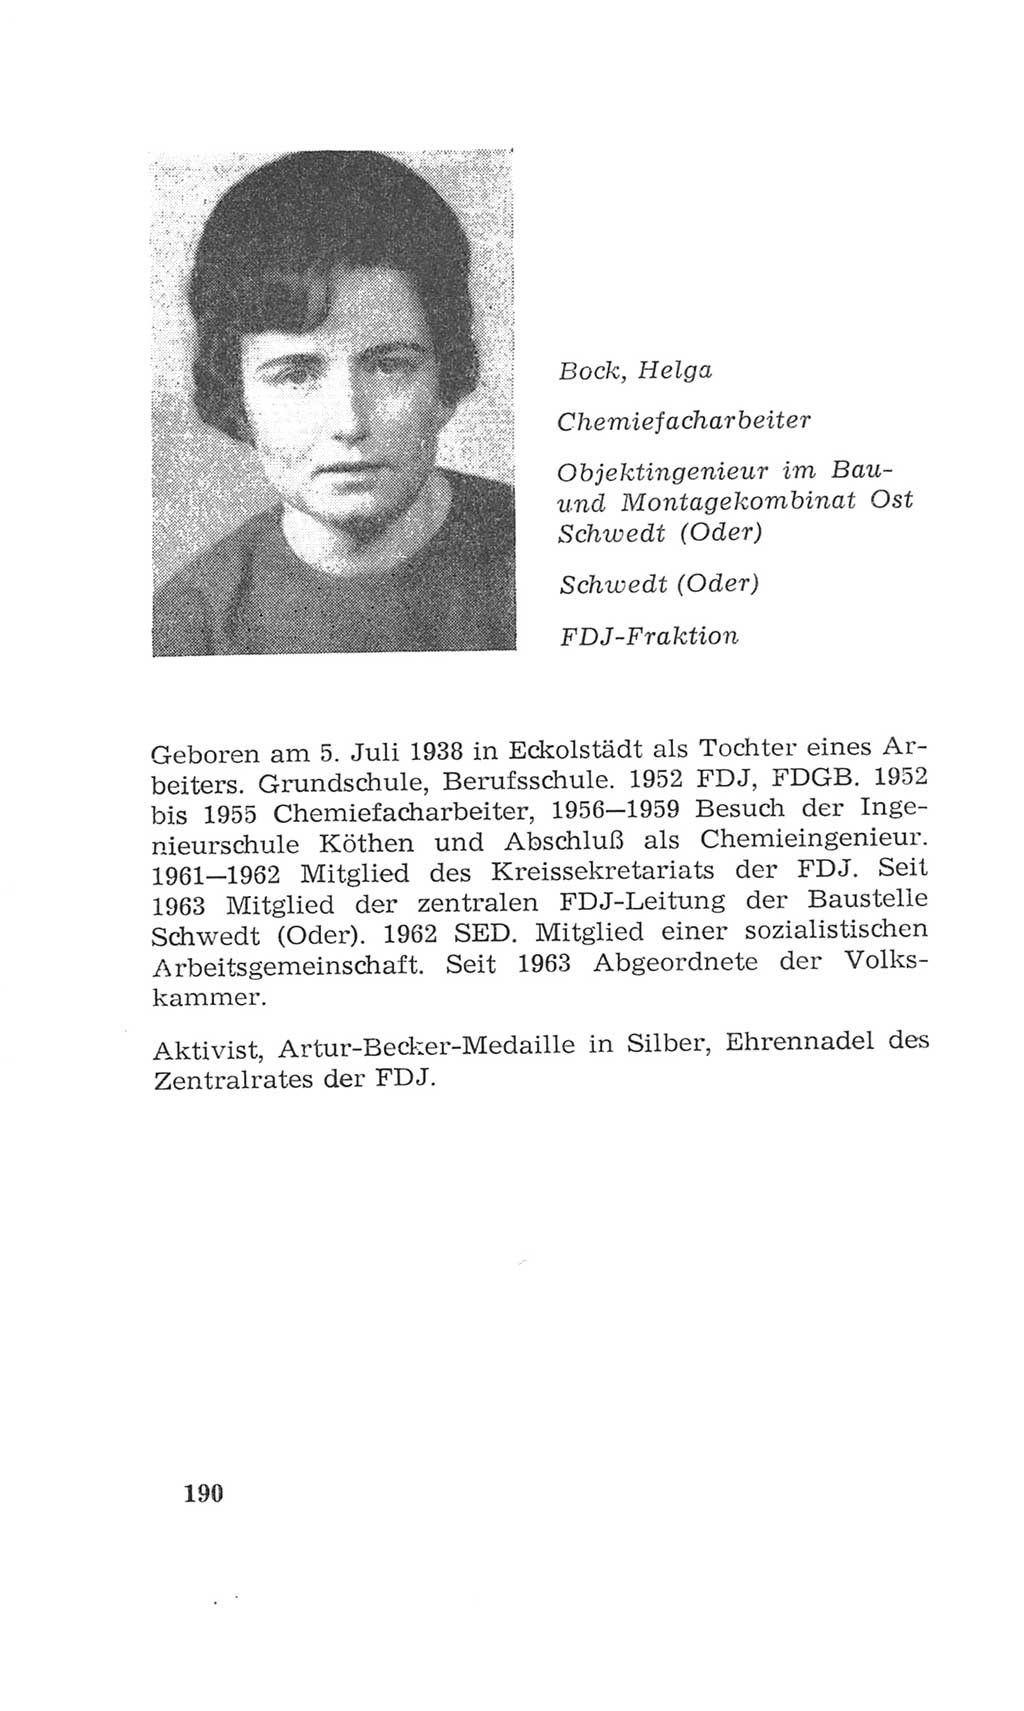 Volkskammer (VK) der Deutschen Demokratischen Republik (DDR), 4. Wahlperiode 1963-1967, Seite 190 (VK. DDR 4. WP. 1963-1967, S. 190)